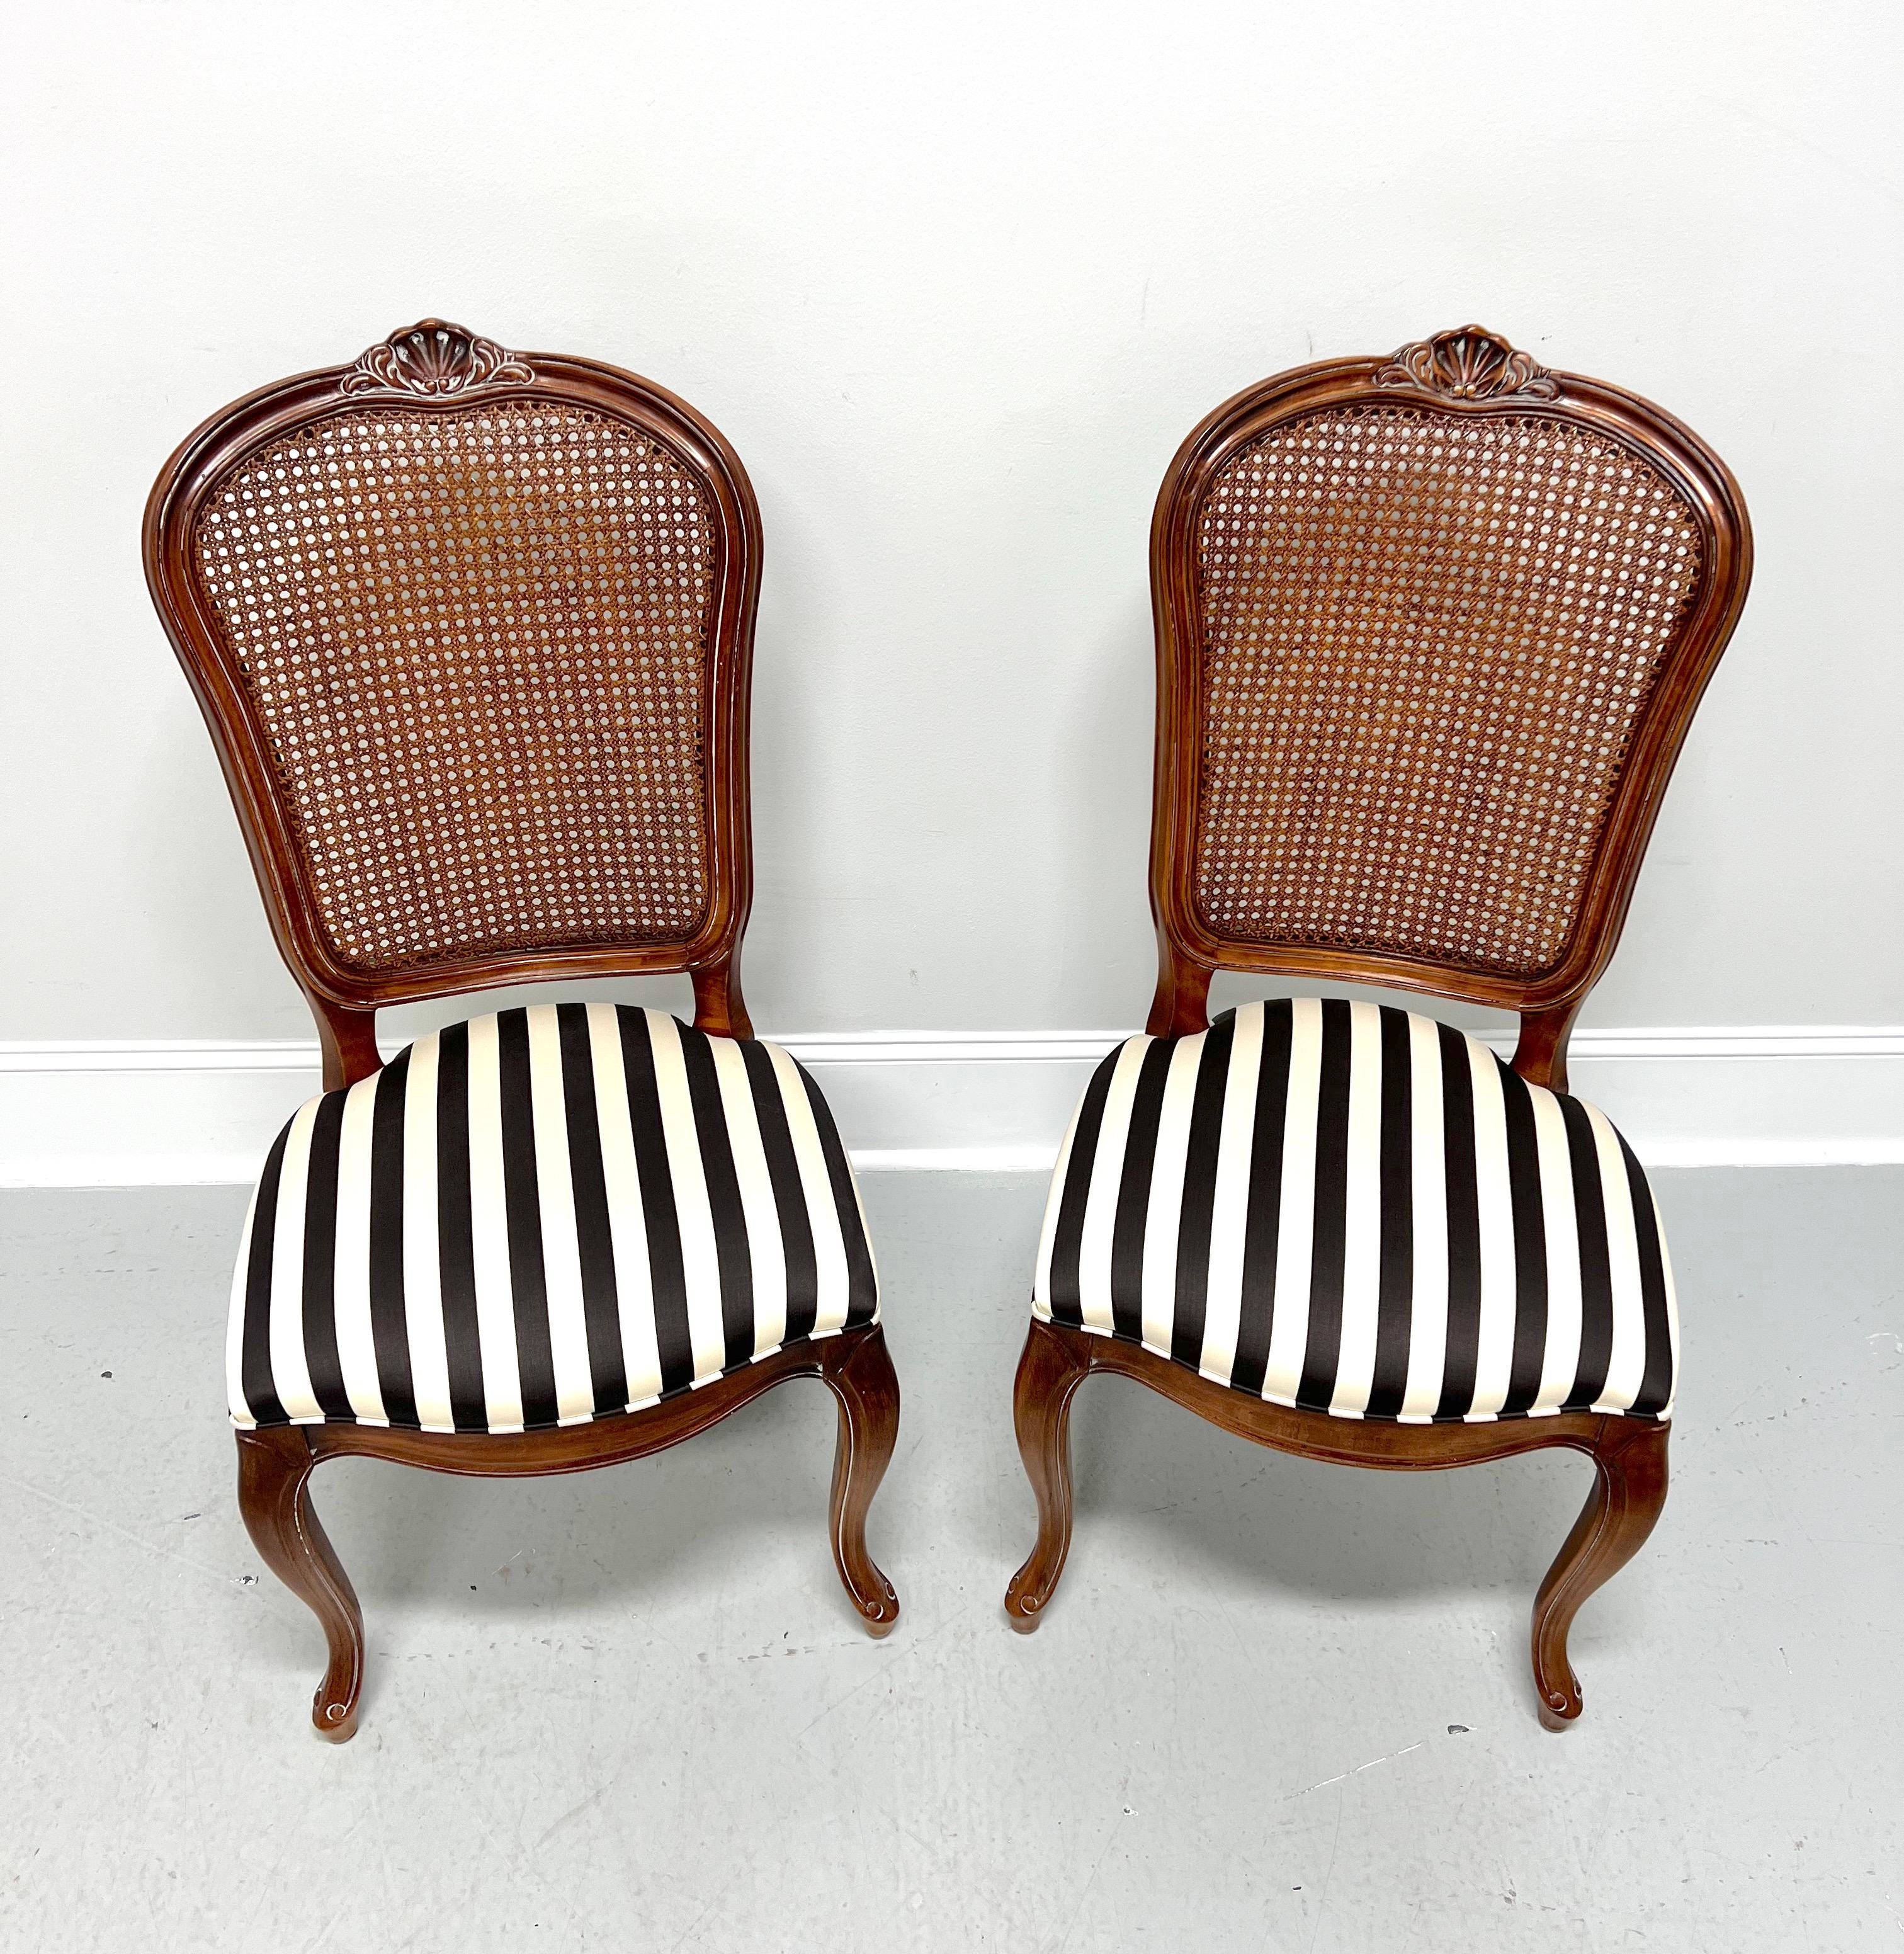 Paire de chaises d'appoint de style provincial français de Century Furniture, de la Collection Chardeau conçue par Raymond K Sobota. Bois massif de cerisier, détails sculptés sur la barre de crête, cannage sur le dossier, sièges rembourrés en tissu